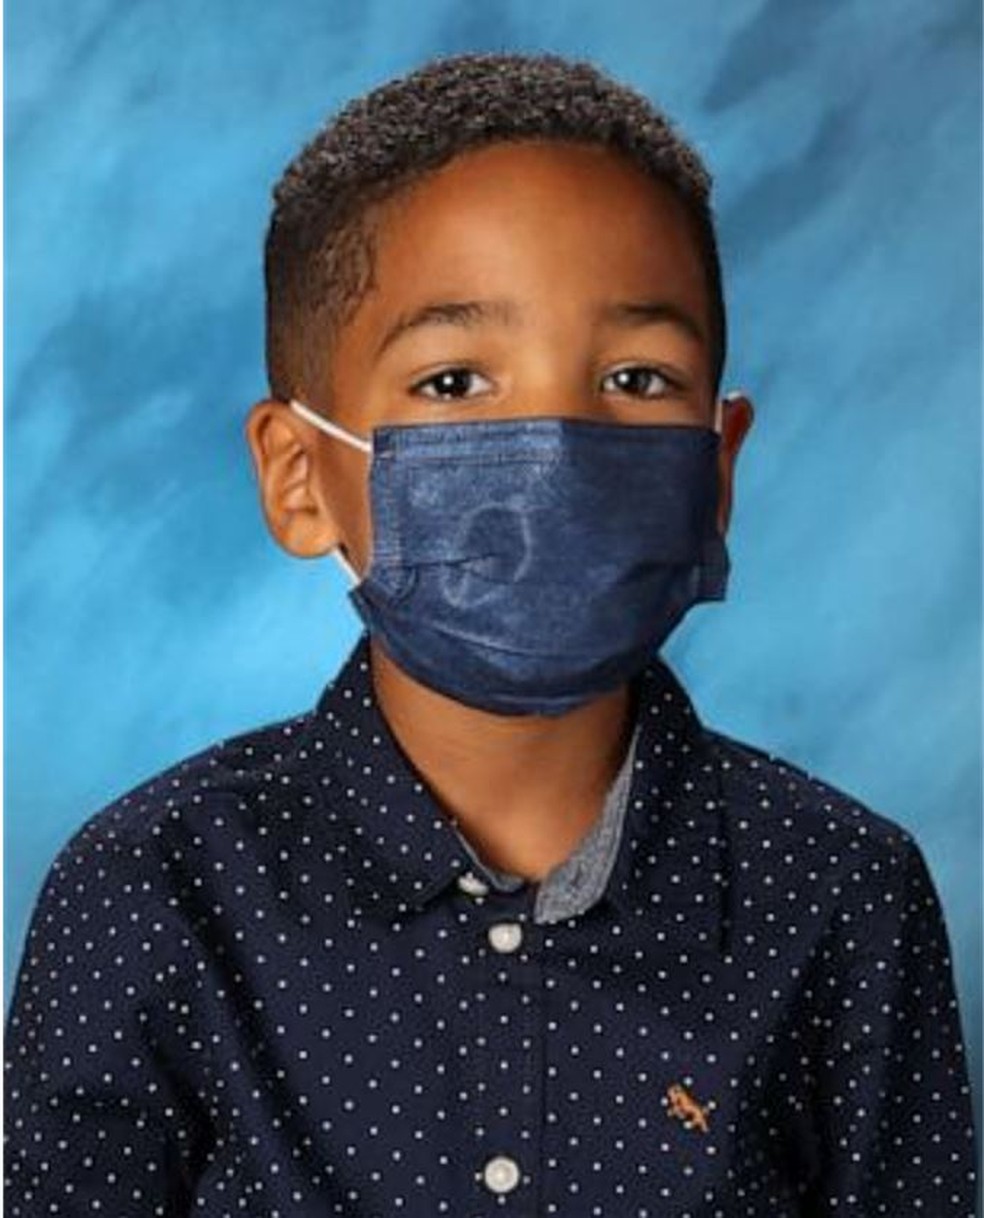 Mason não quis tirar a máscara ao ser fotografado na escola — Foto: Reprodução/Redes sociais